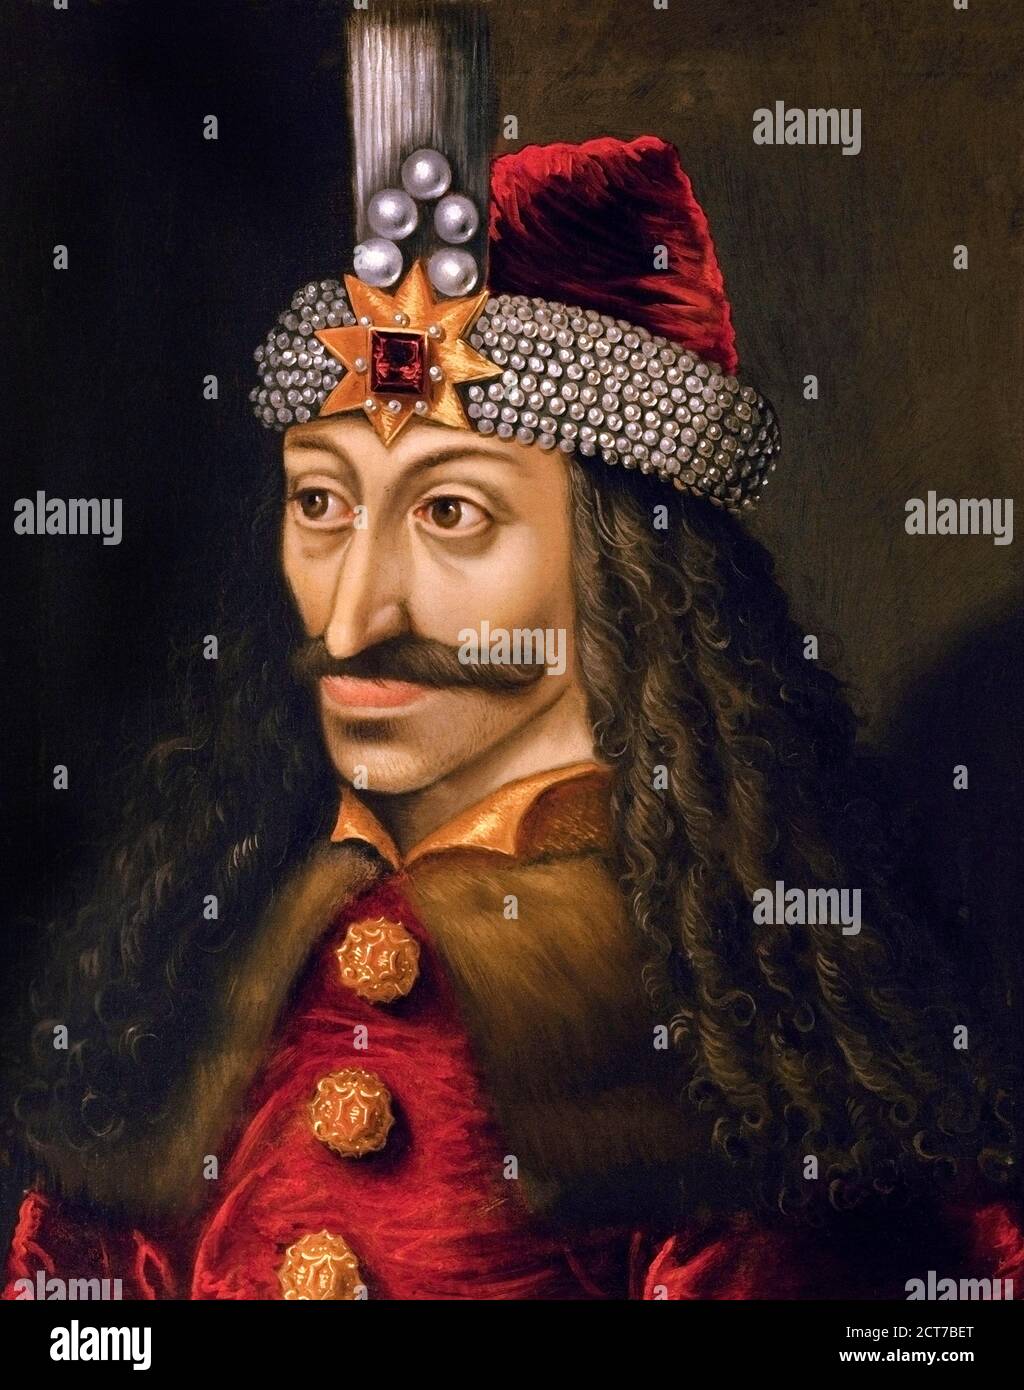 Vlad l'Impaler. Portrait de Vlad III, connu sous le nom de Vlad l'Impaler ou Vlad Dracula (v.1428/31-1476/77), qui était souverain de Valachie trois fois. Peinture, huile sur toile, milieu du XVIe siècle. Banque D'Images